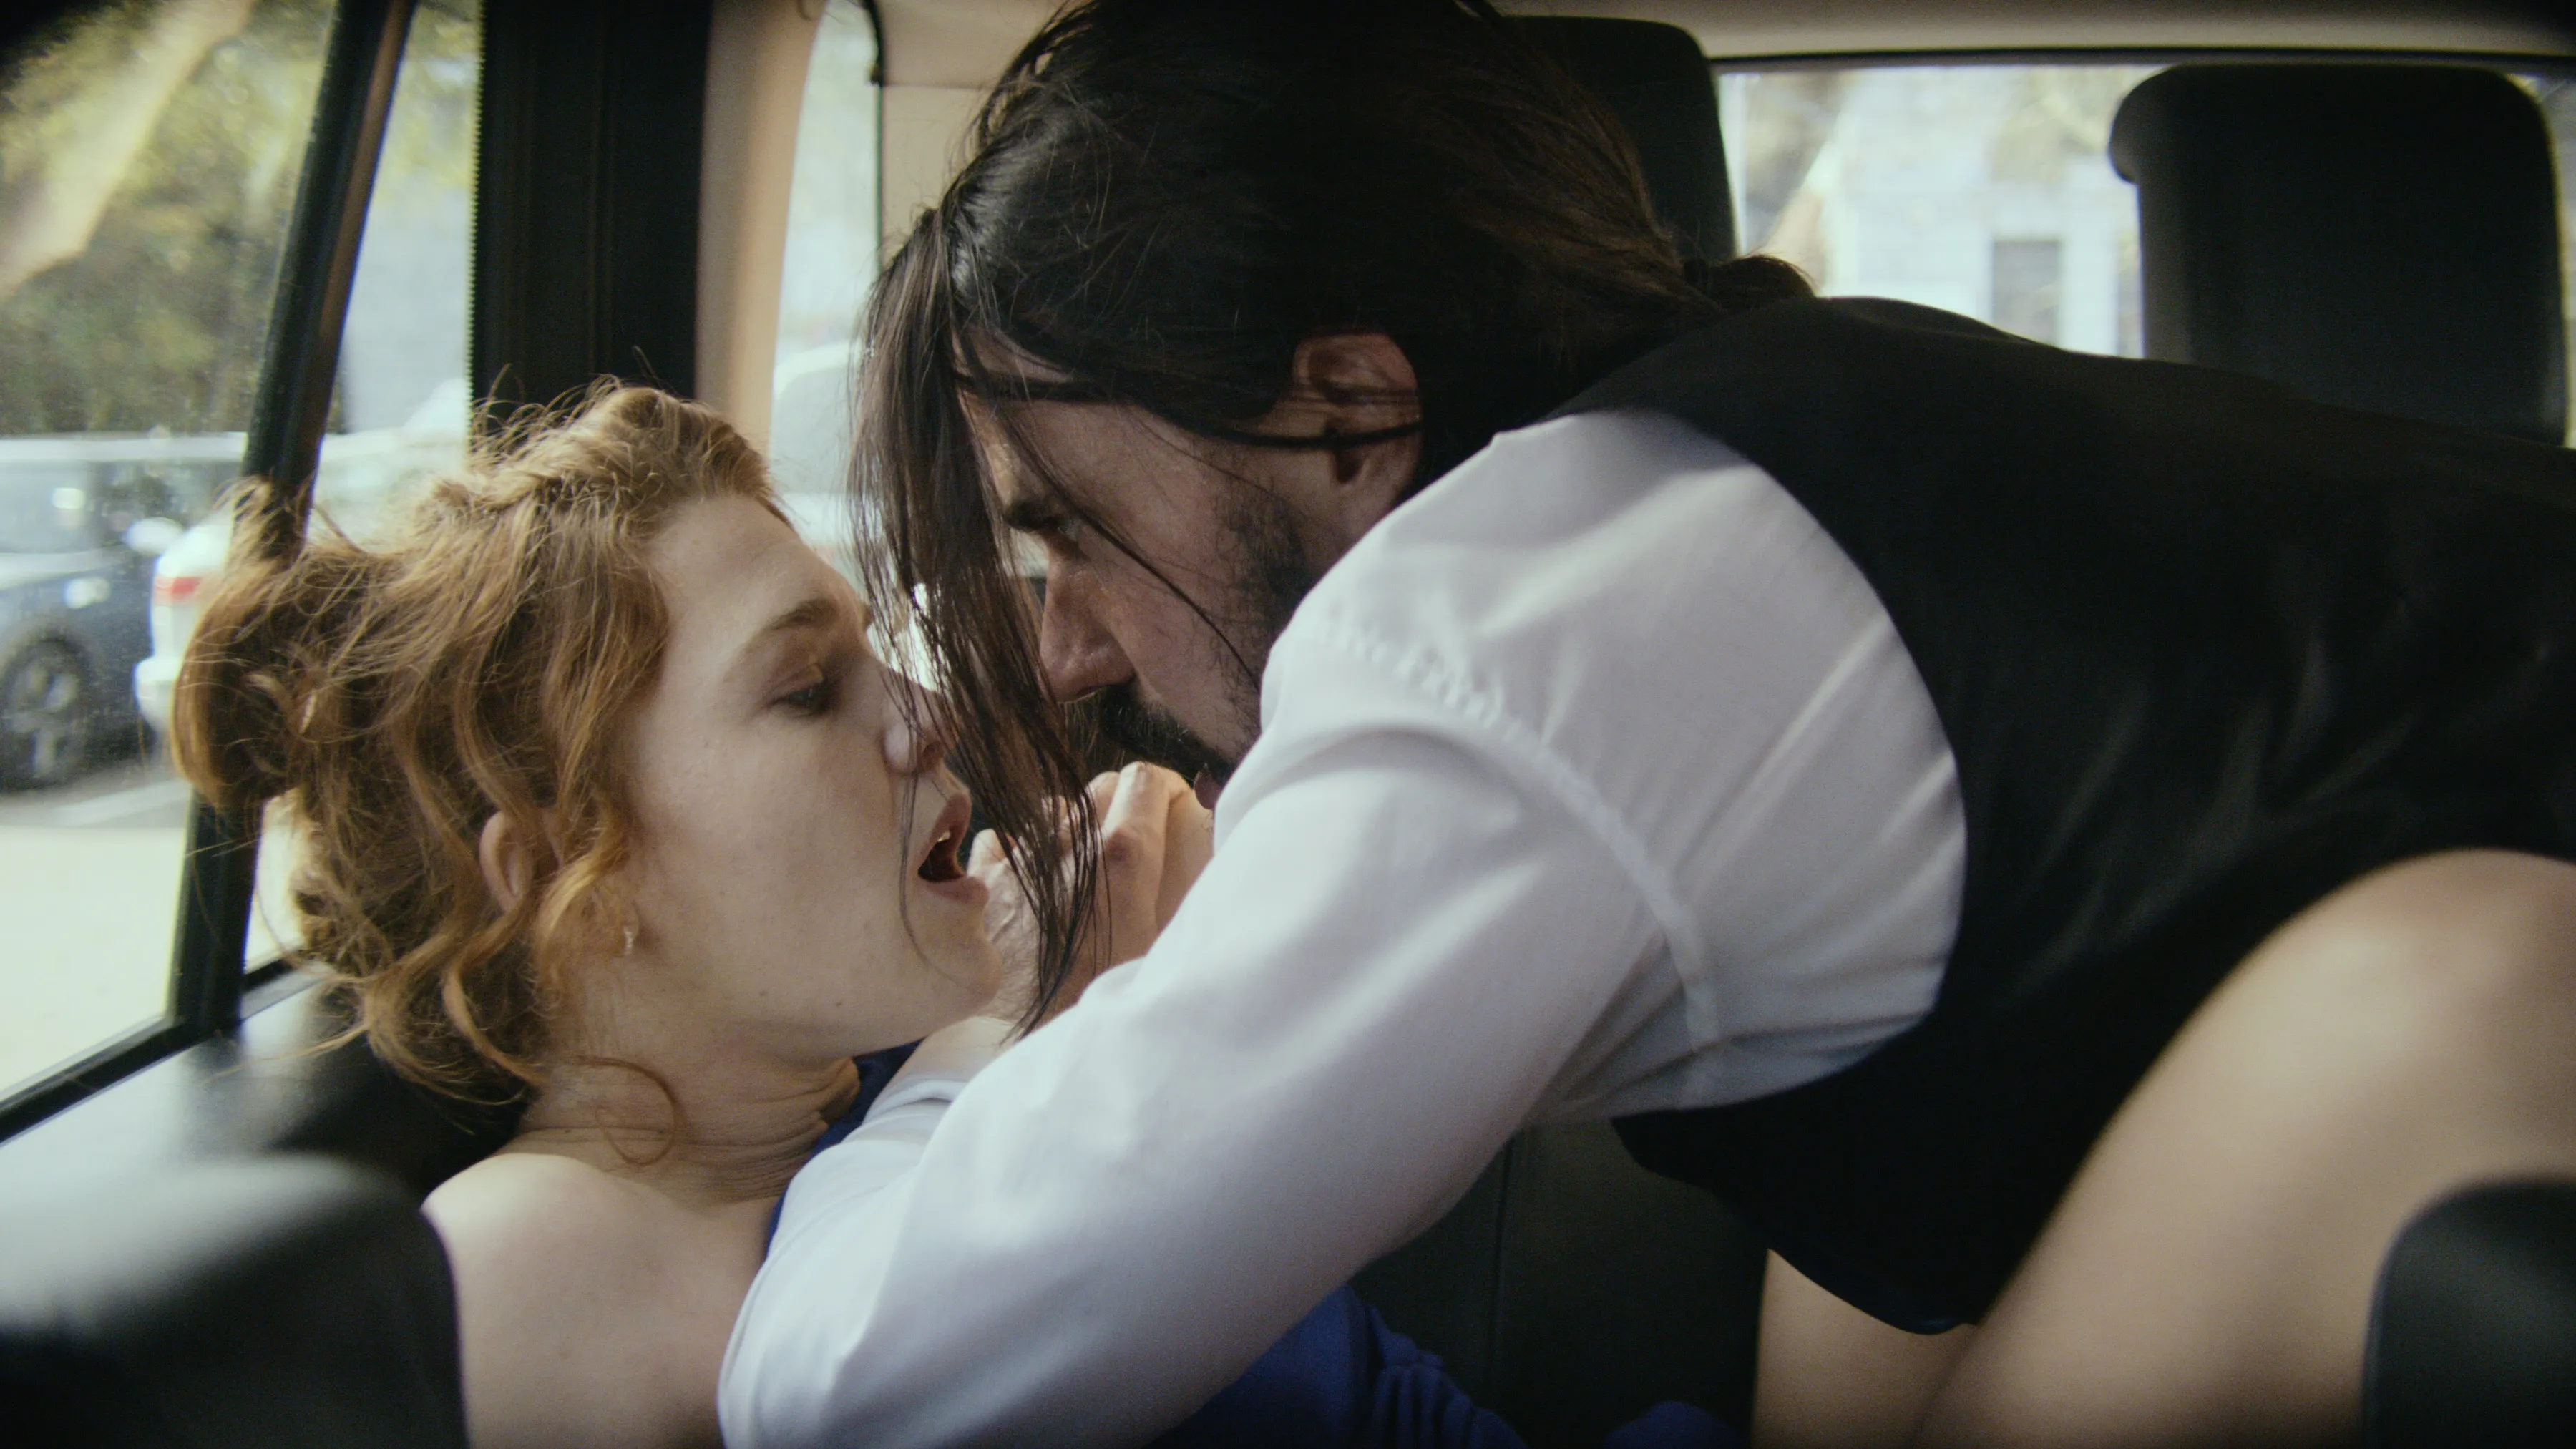 Bild aus dem Film: Paar während Sex im Auto